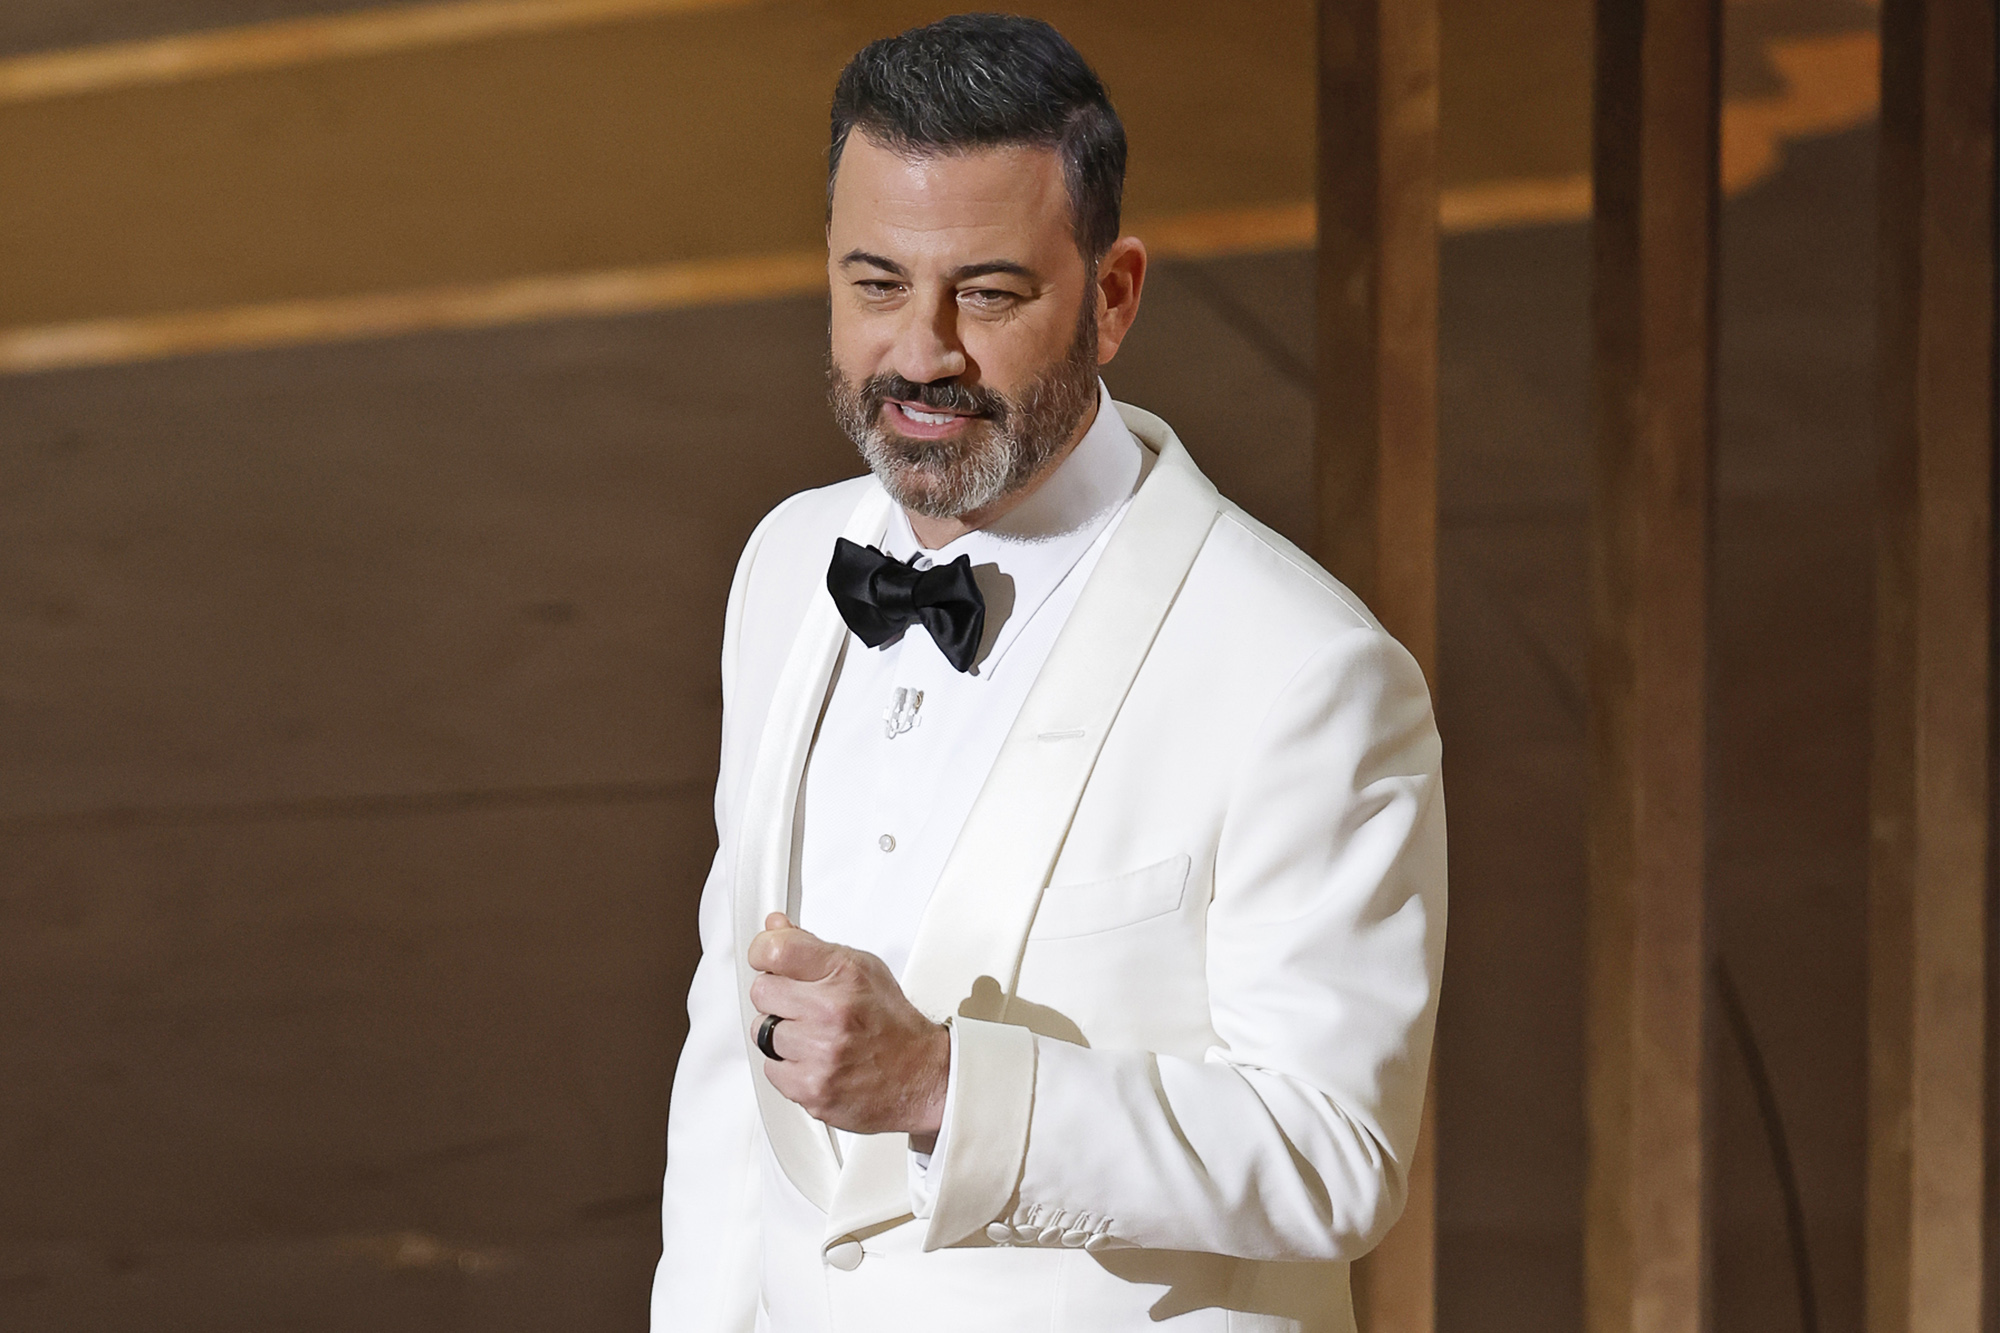 Jimmy Kimmel hosts the 2023 Oscars